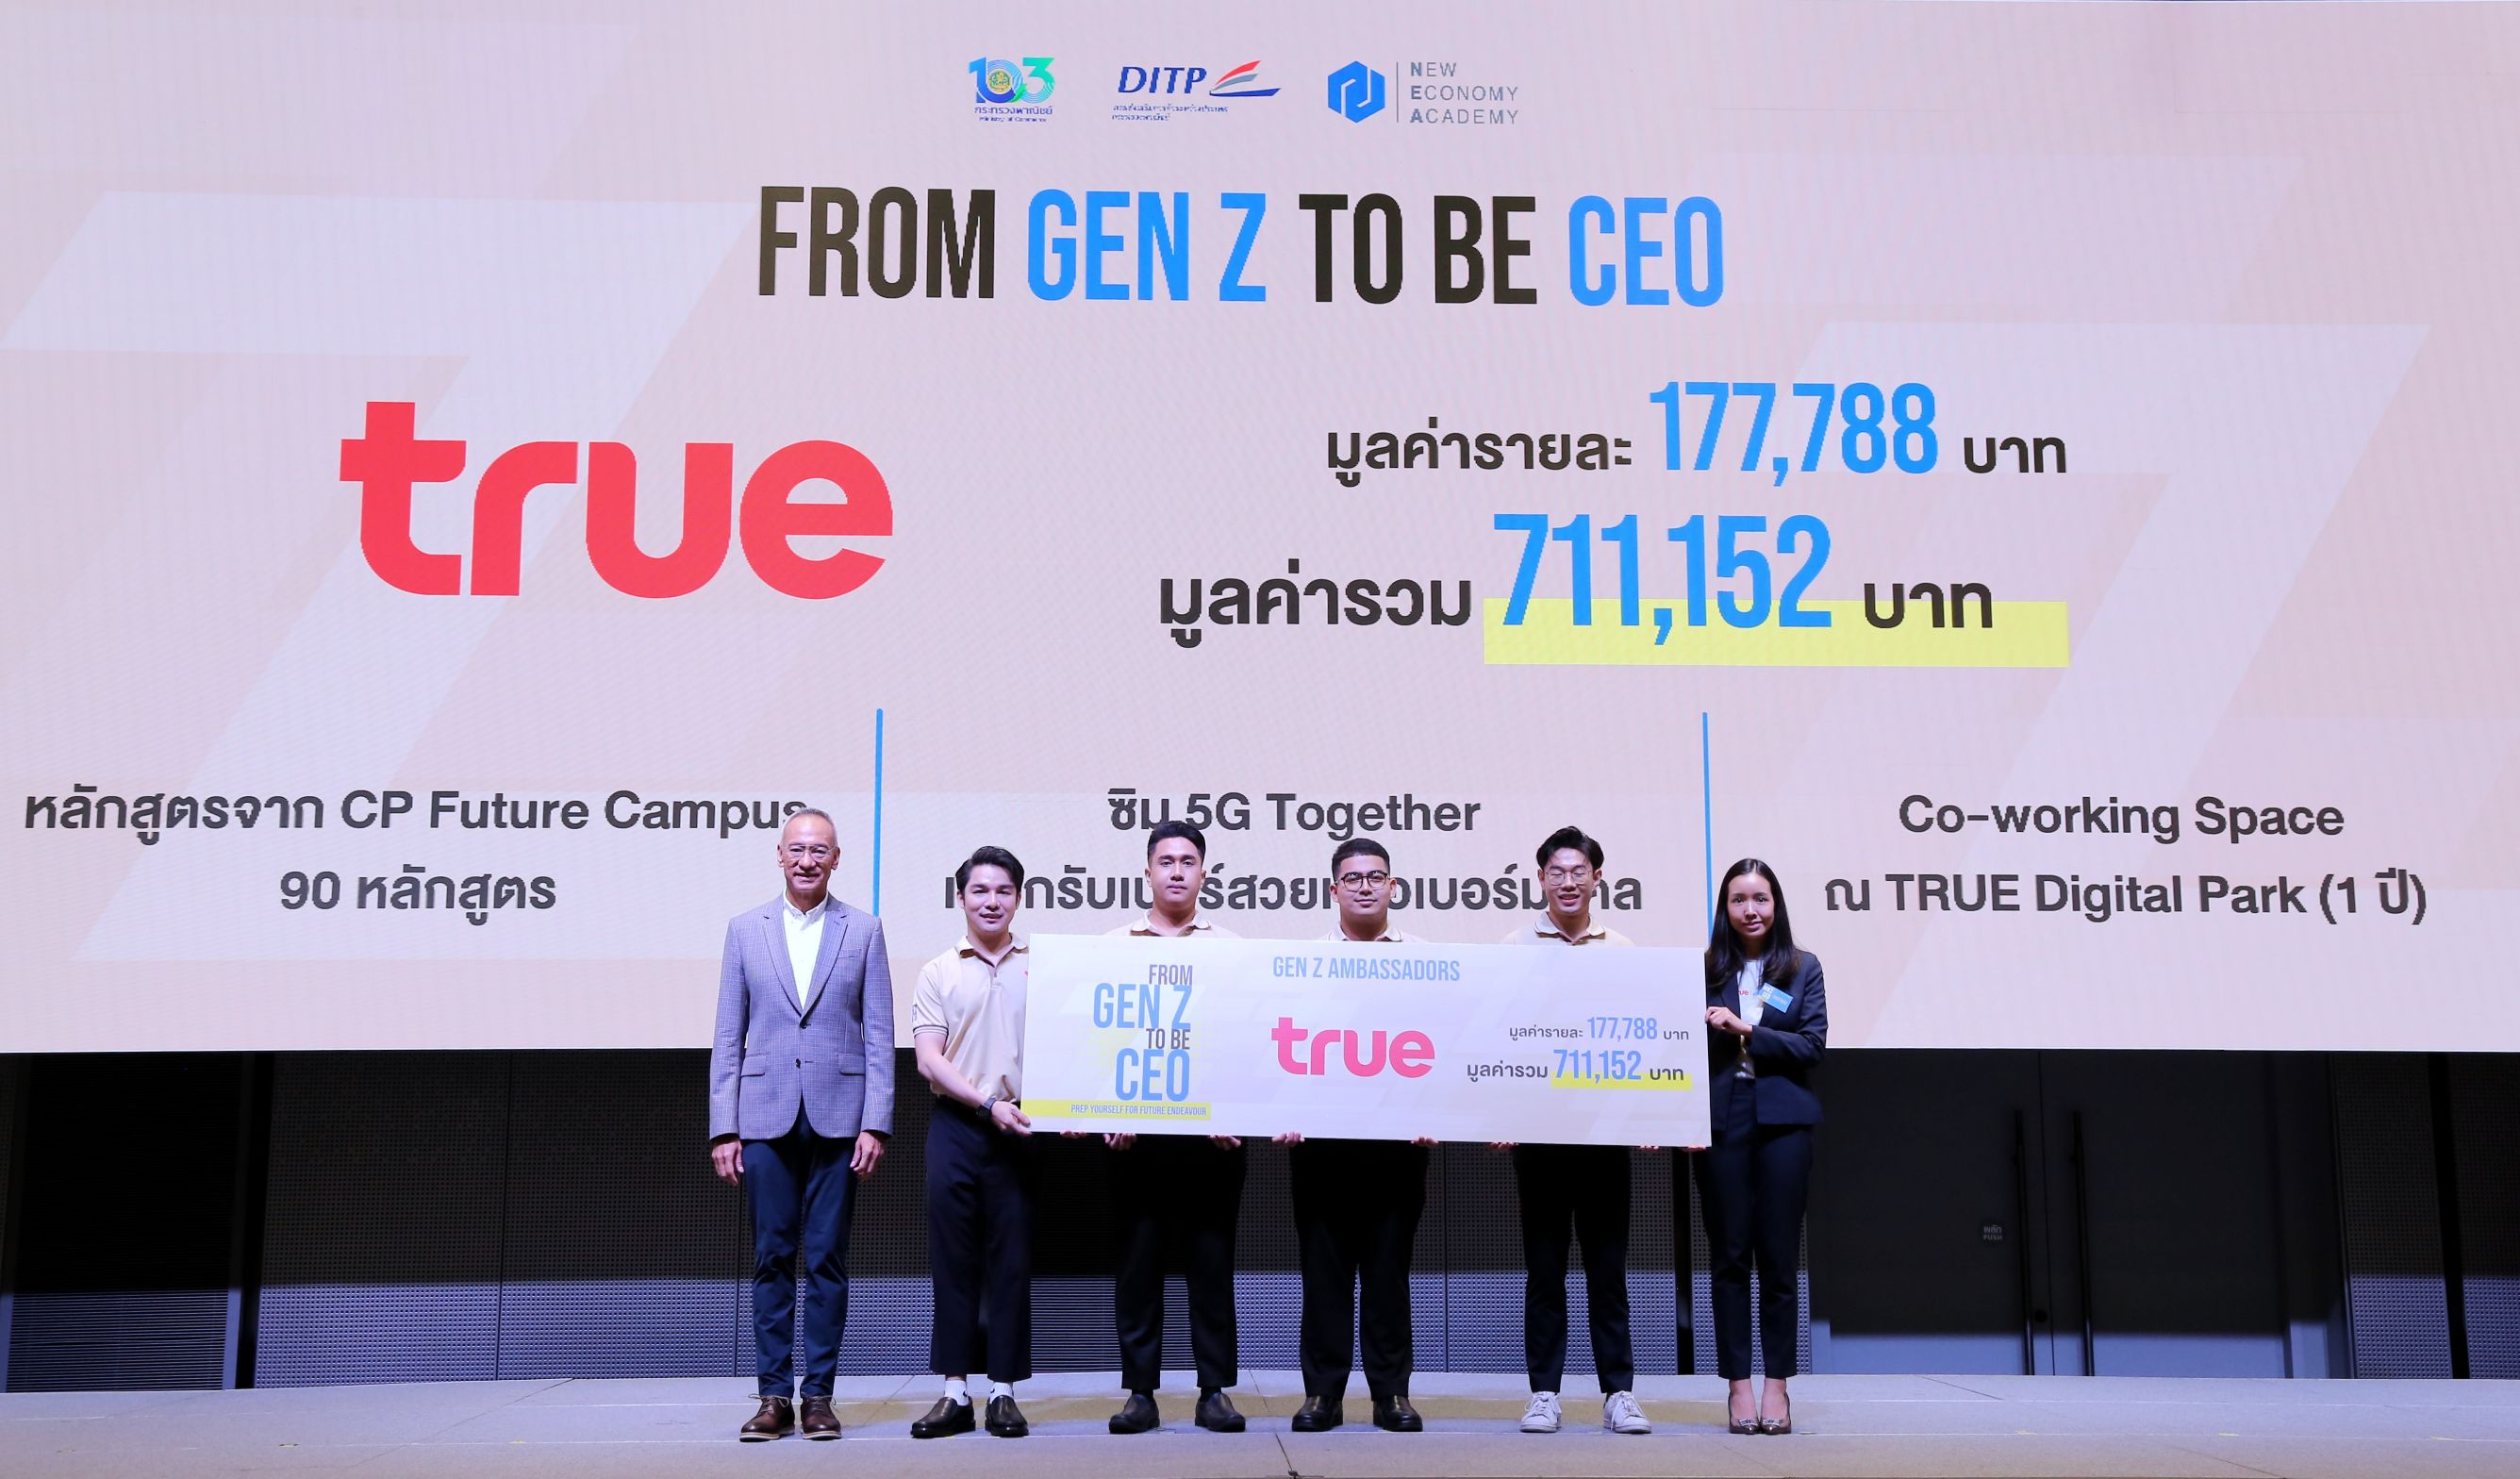 ทรู ปั้นนิวเจนประดับวงการผู้ประกอบการยุคใหม่  พร้อมก้าว From Gen Z to Be CEO เติบโตอย่างยั่งยืน